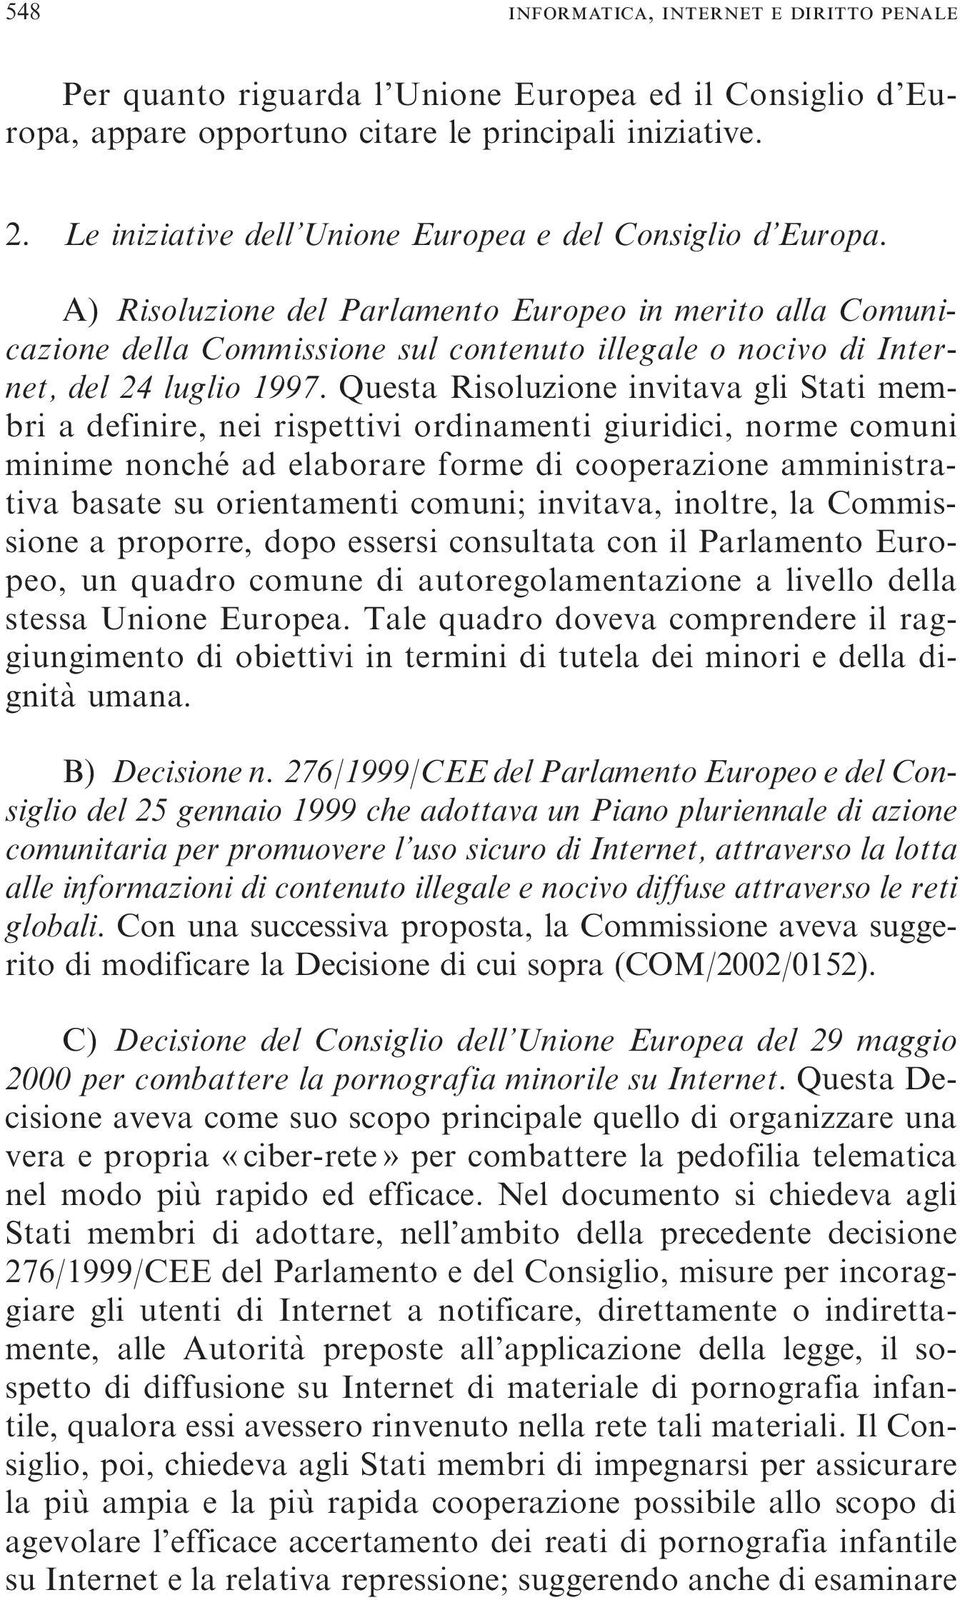 A) Risoluzione del Parlamento Europeo in merito alla Comunicazione della Commissione sul contenuto illegale o nocivo di Internet, del 24 luglio 1997.